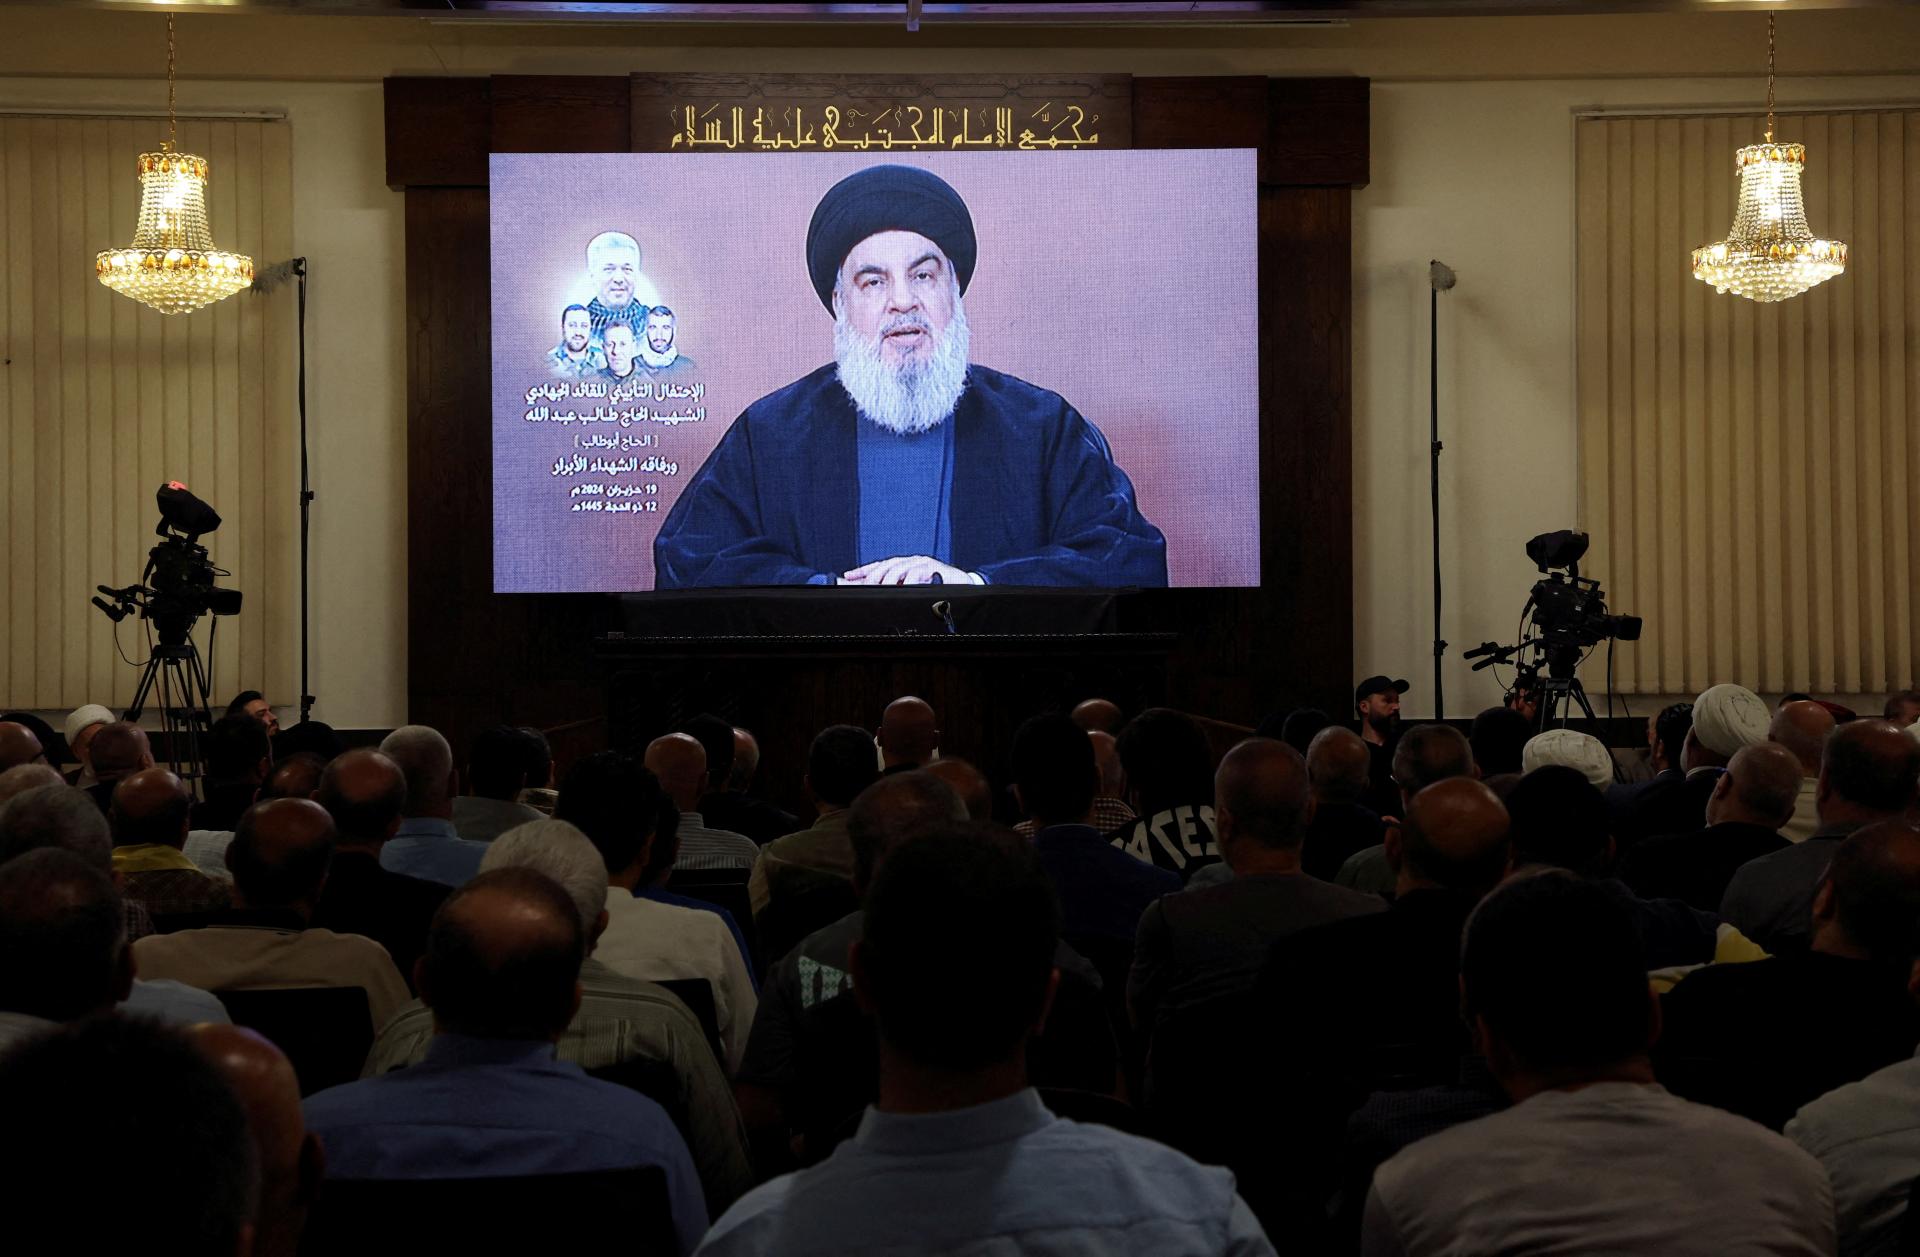 V prípade vojny by v Izraeli nebolo nikde bezpečne, varoval vodca Hizballáhu. Pohrozil aj Cypru